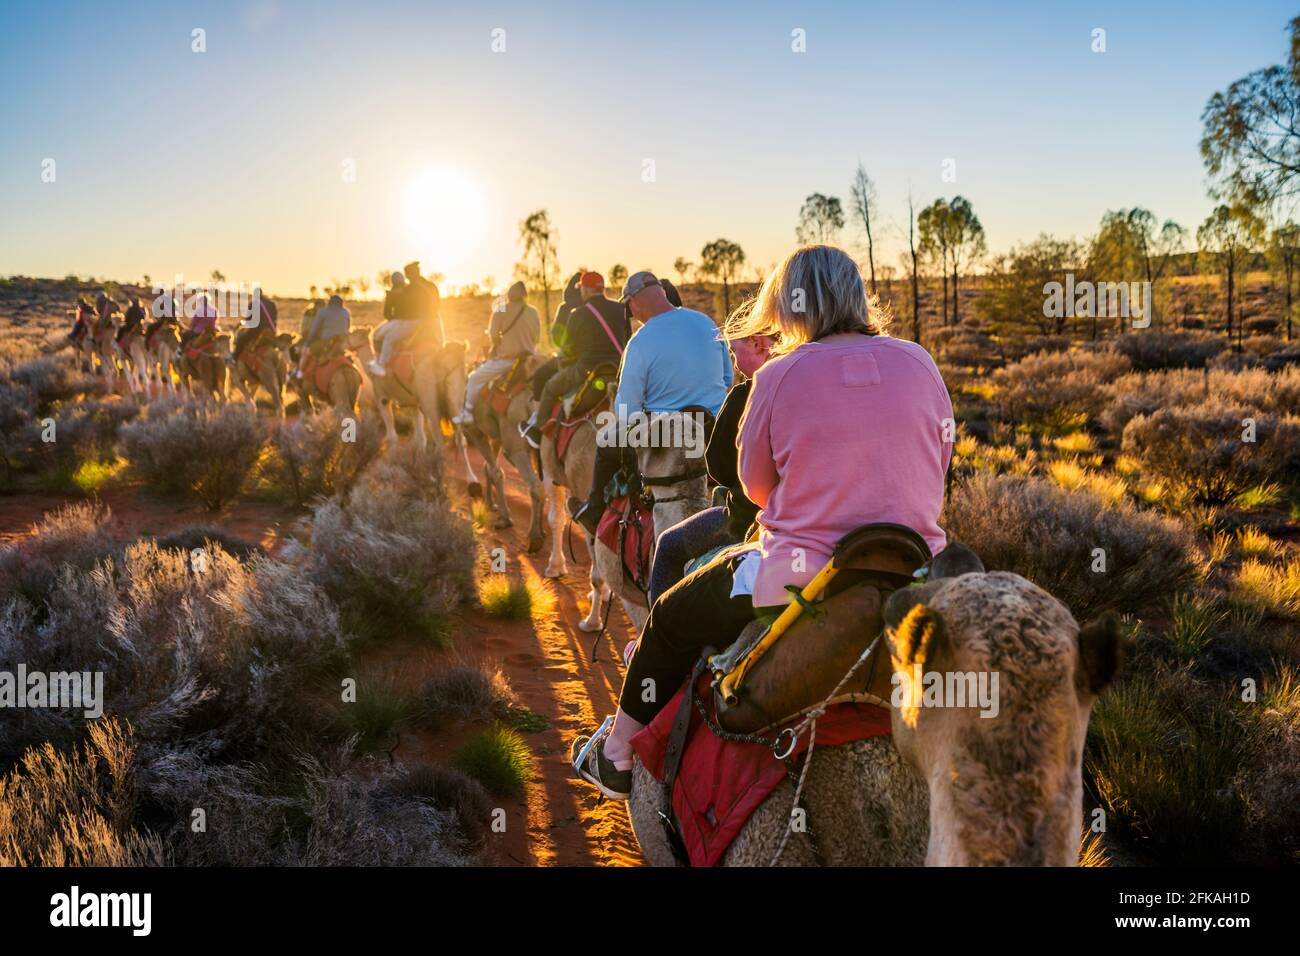 Tourists enjoying sunrise in the Central Australian desert Stock Photo